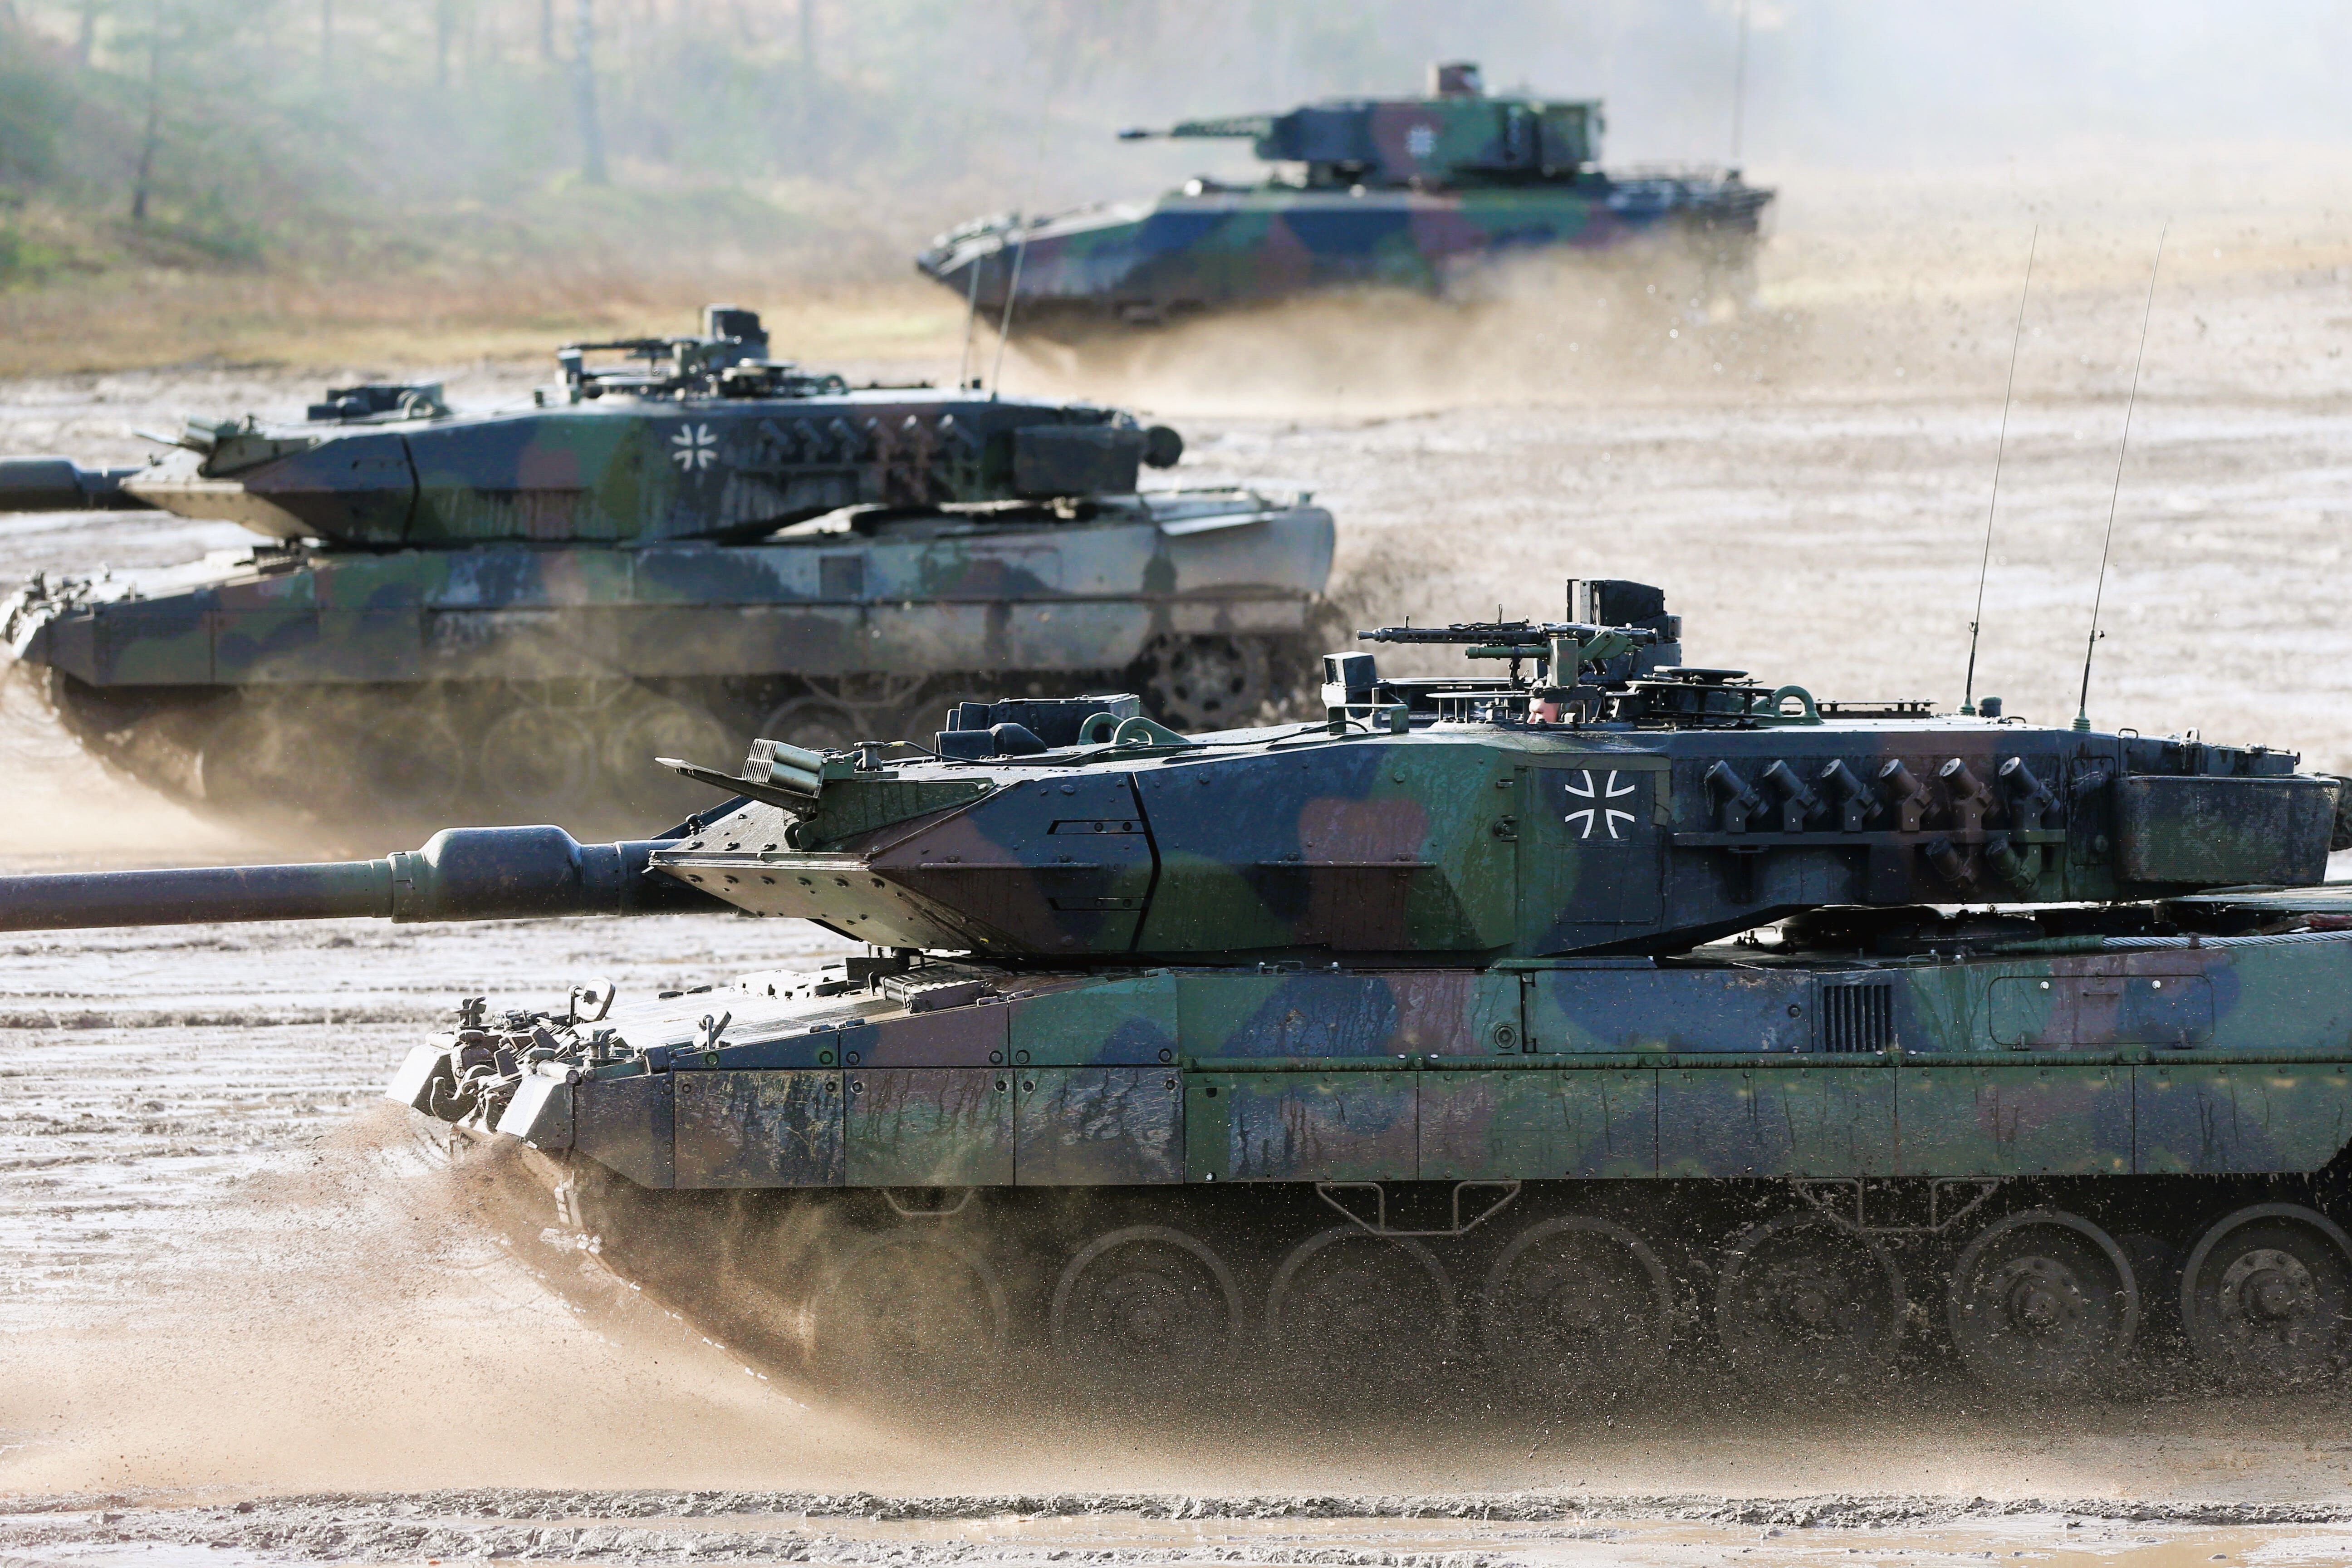 Direkte Drohung an Deutschland! - Kreml schwört Rache bei Panzerlieferungen an die Ukraine!